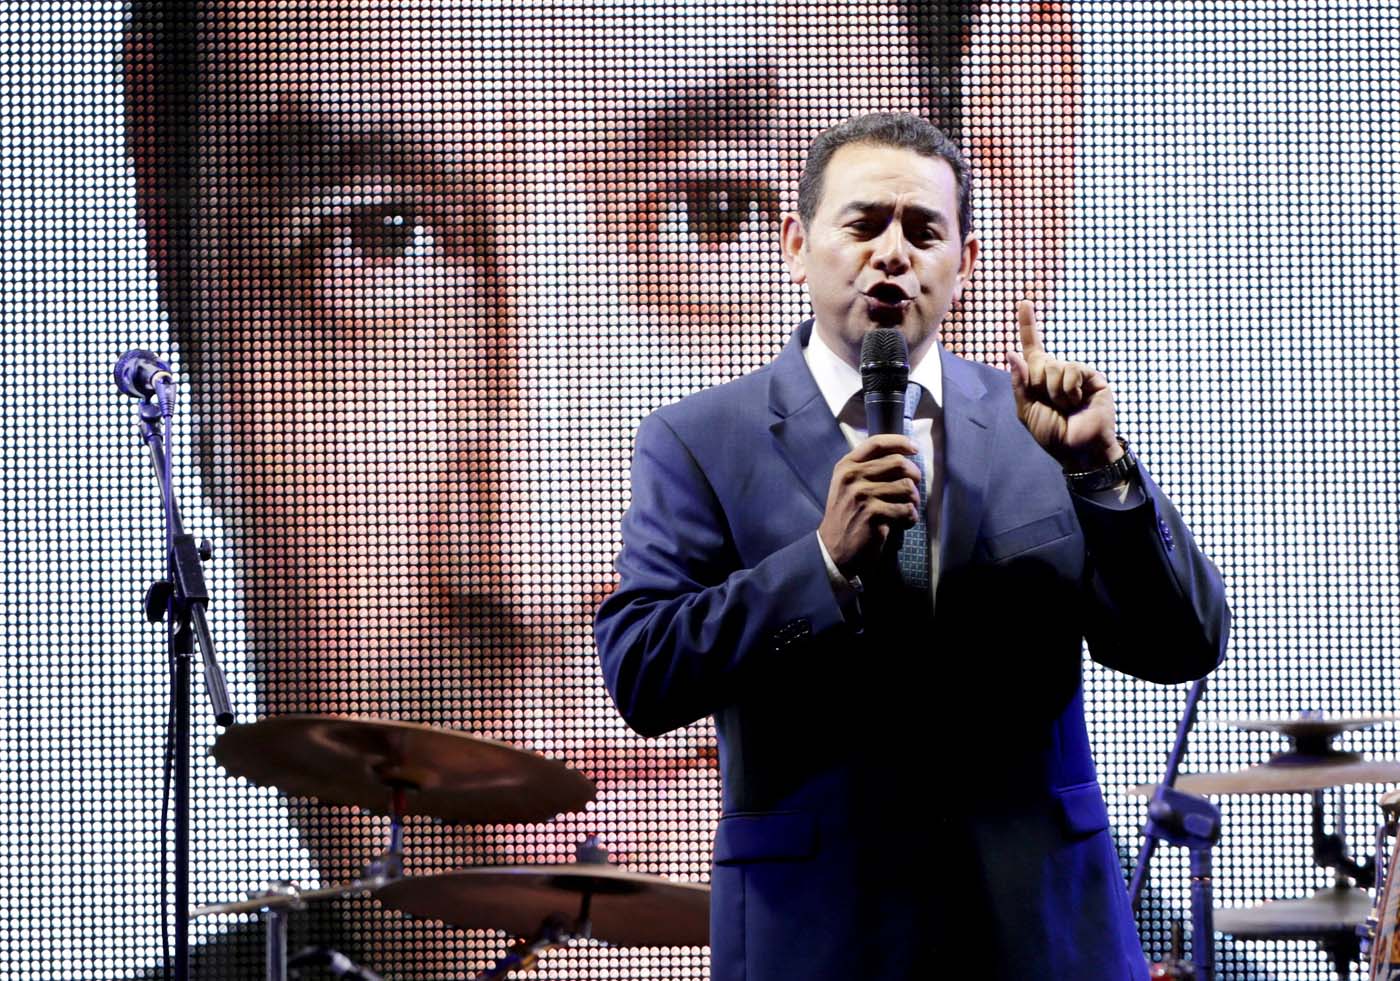 Guatemala castiga a los políticos tradicionales y vota por un comediante